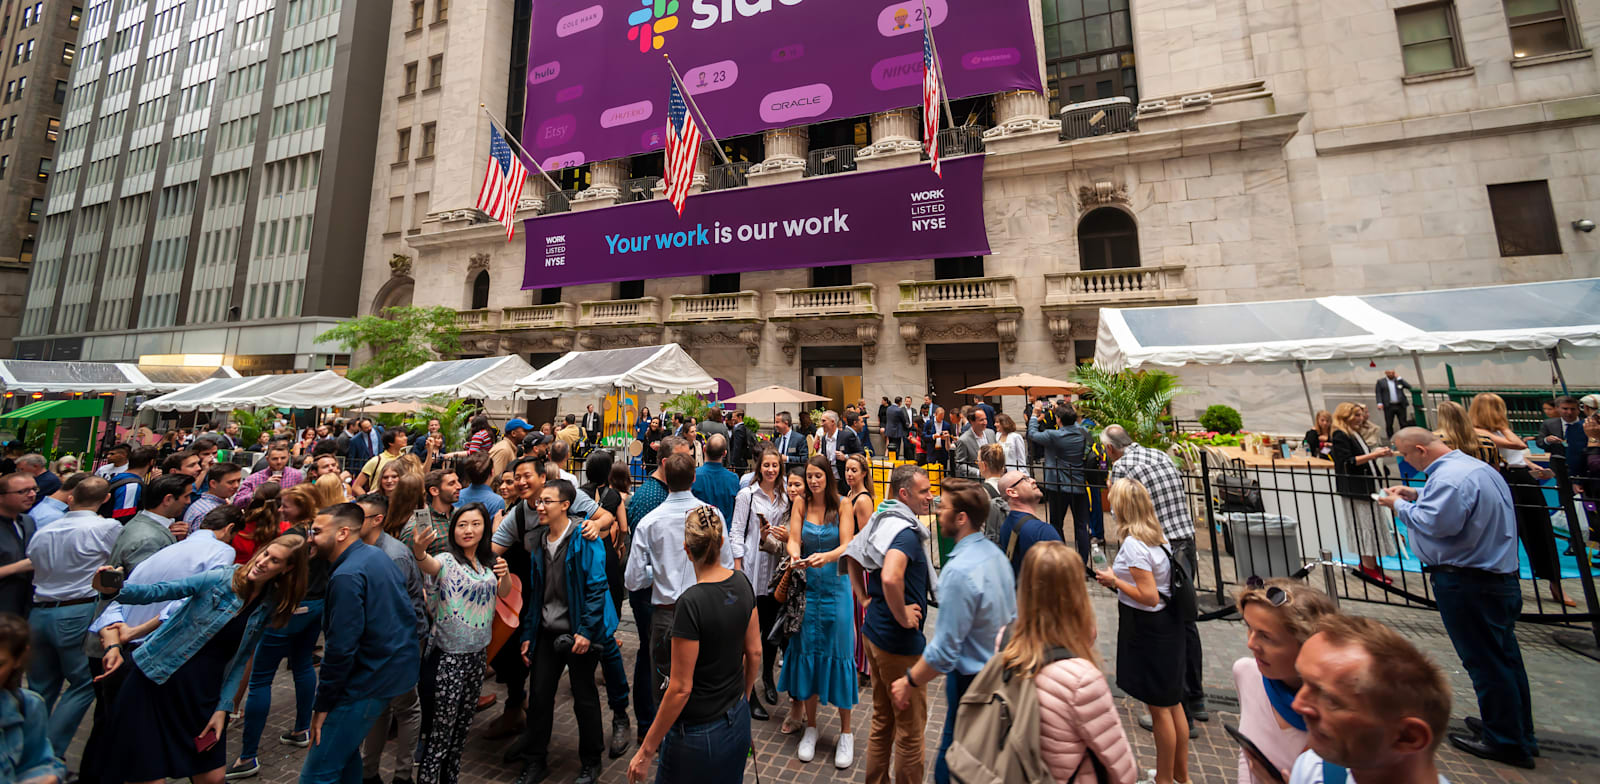 עובדי סלאק מצטלמים עם העוברים ושבים מחוץ לבורסת ניו יורק ביום ההנפקה ביוני 2019 / צילום: Shutterstock